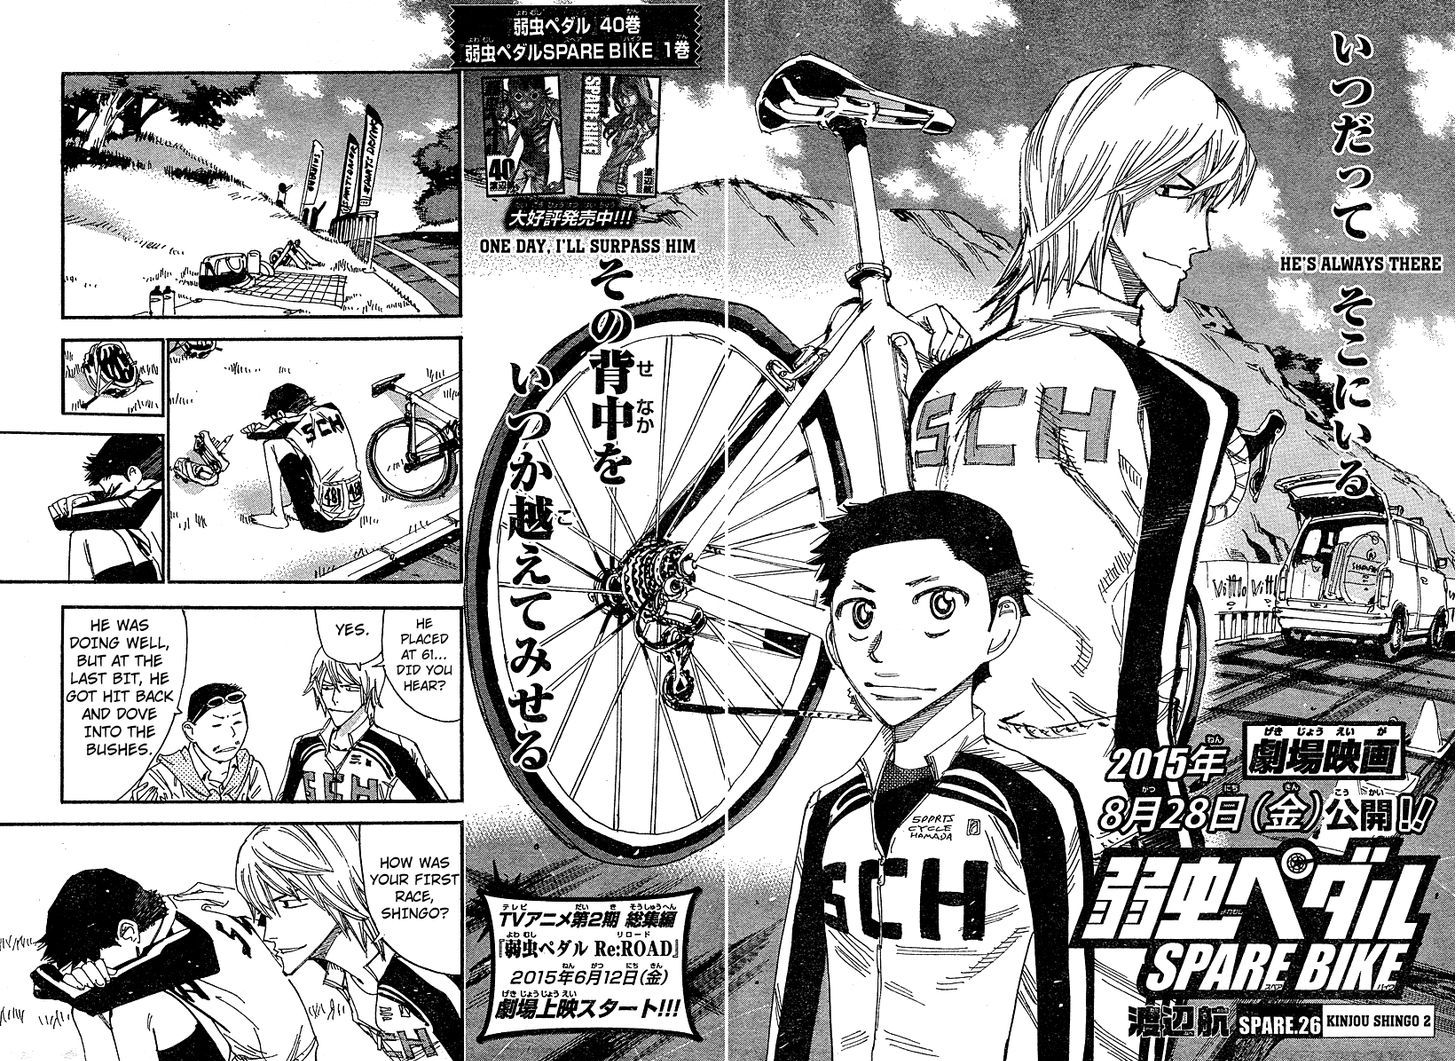 Yowamushi Pedal - Spare Bike 26